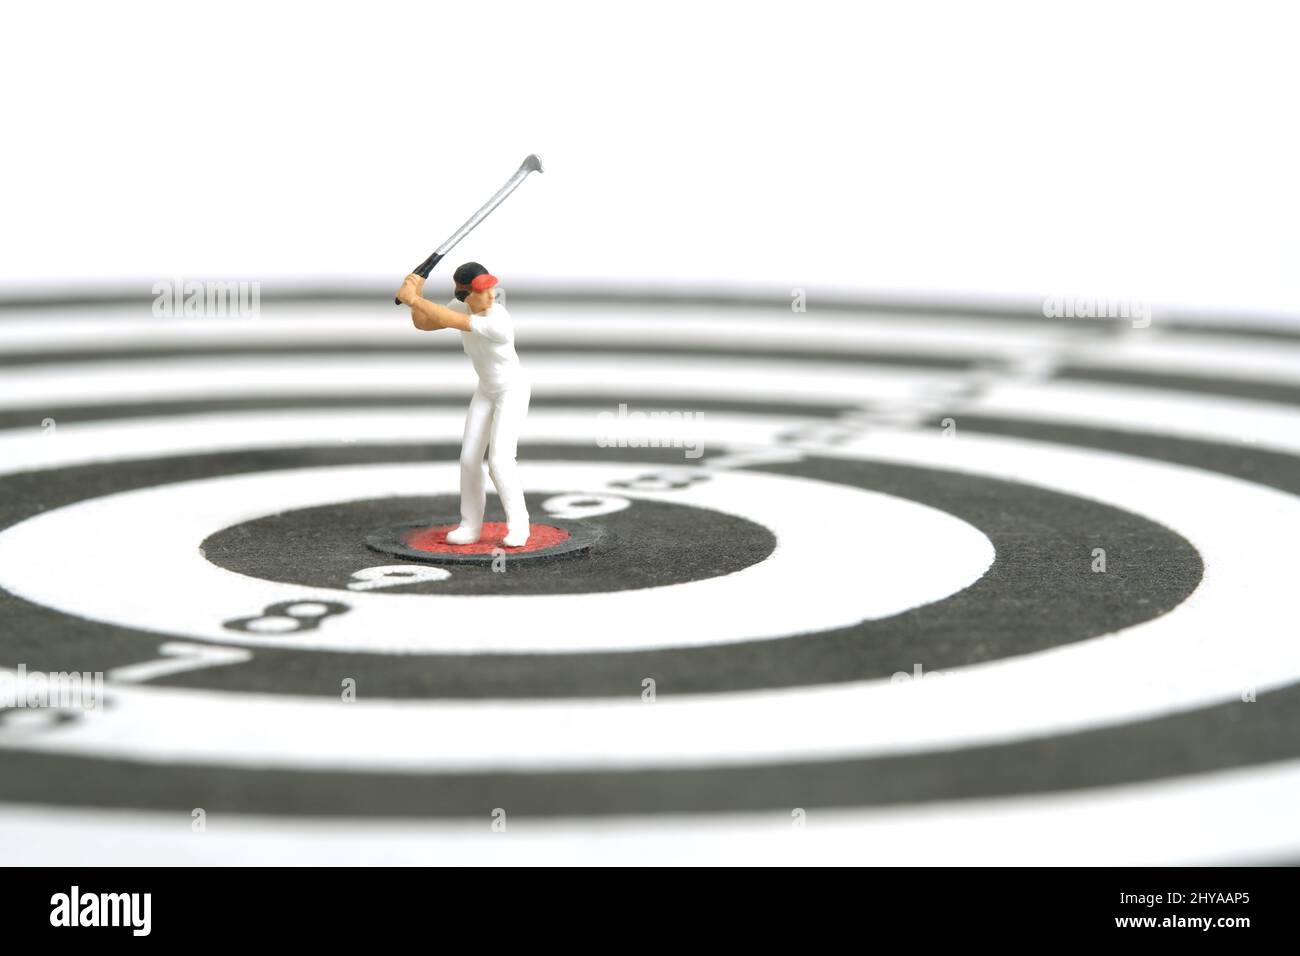 Miniatur Menschen Spielzeug Figur Fotografie. Ein Golfermädchen, das in der Mitte über der Dartscheibe steht, isoliert auf weißem Hintergrund. Bildfoto Stockfoto